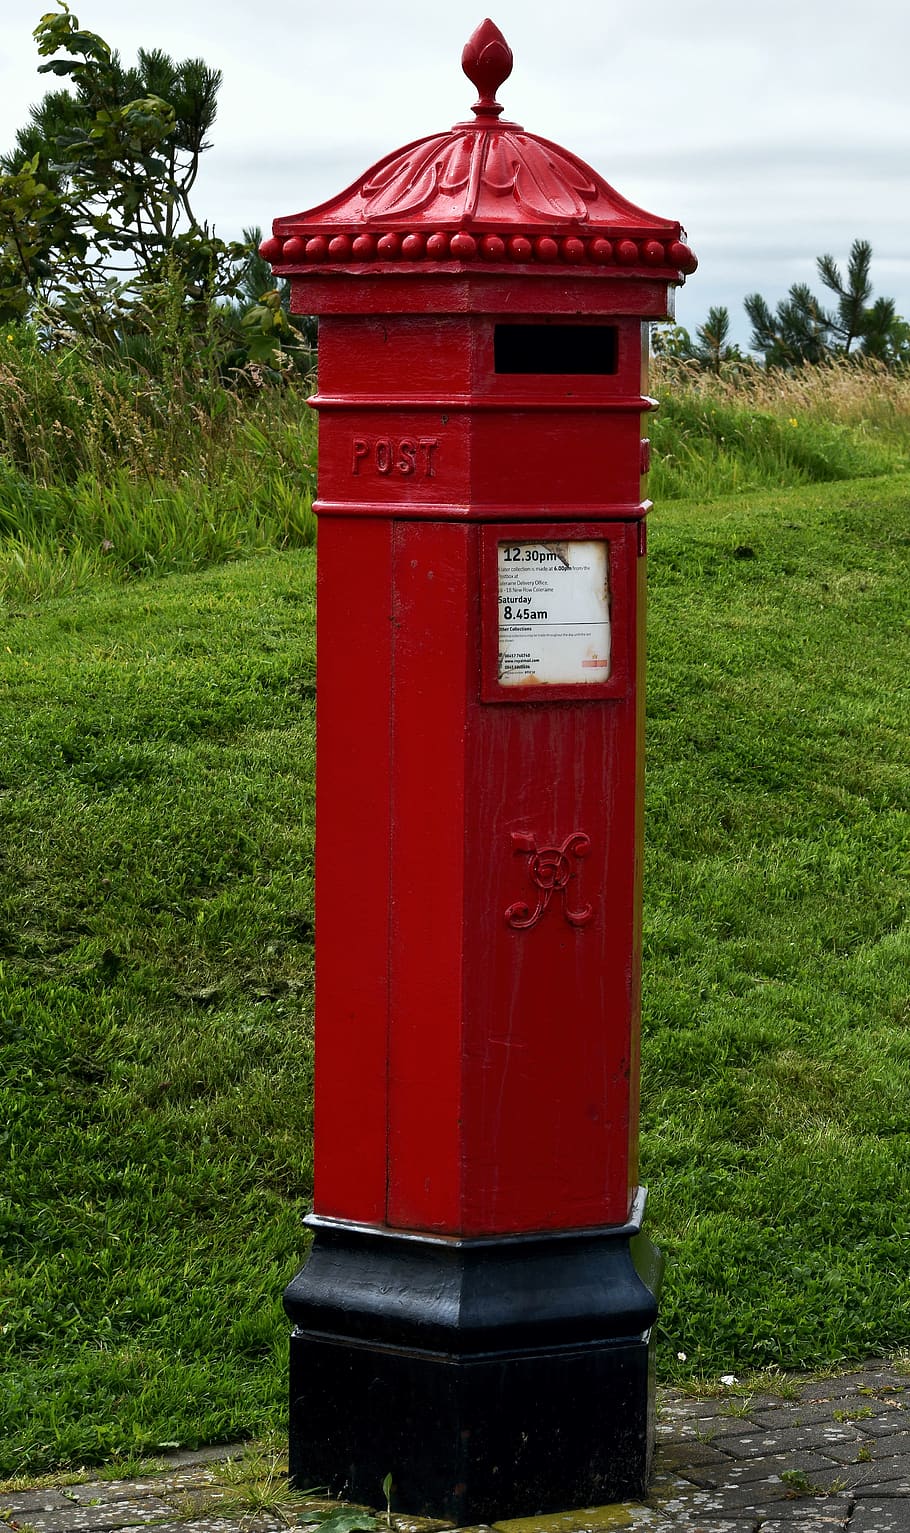 buzón, correo real, irlanda del norte, rojo brillante, antigüedades, rojo, césped, comunicación, planta, correo